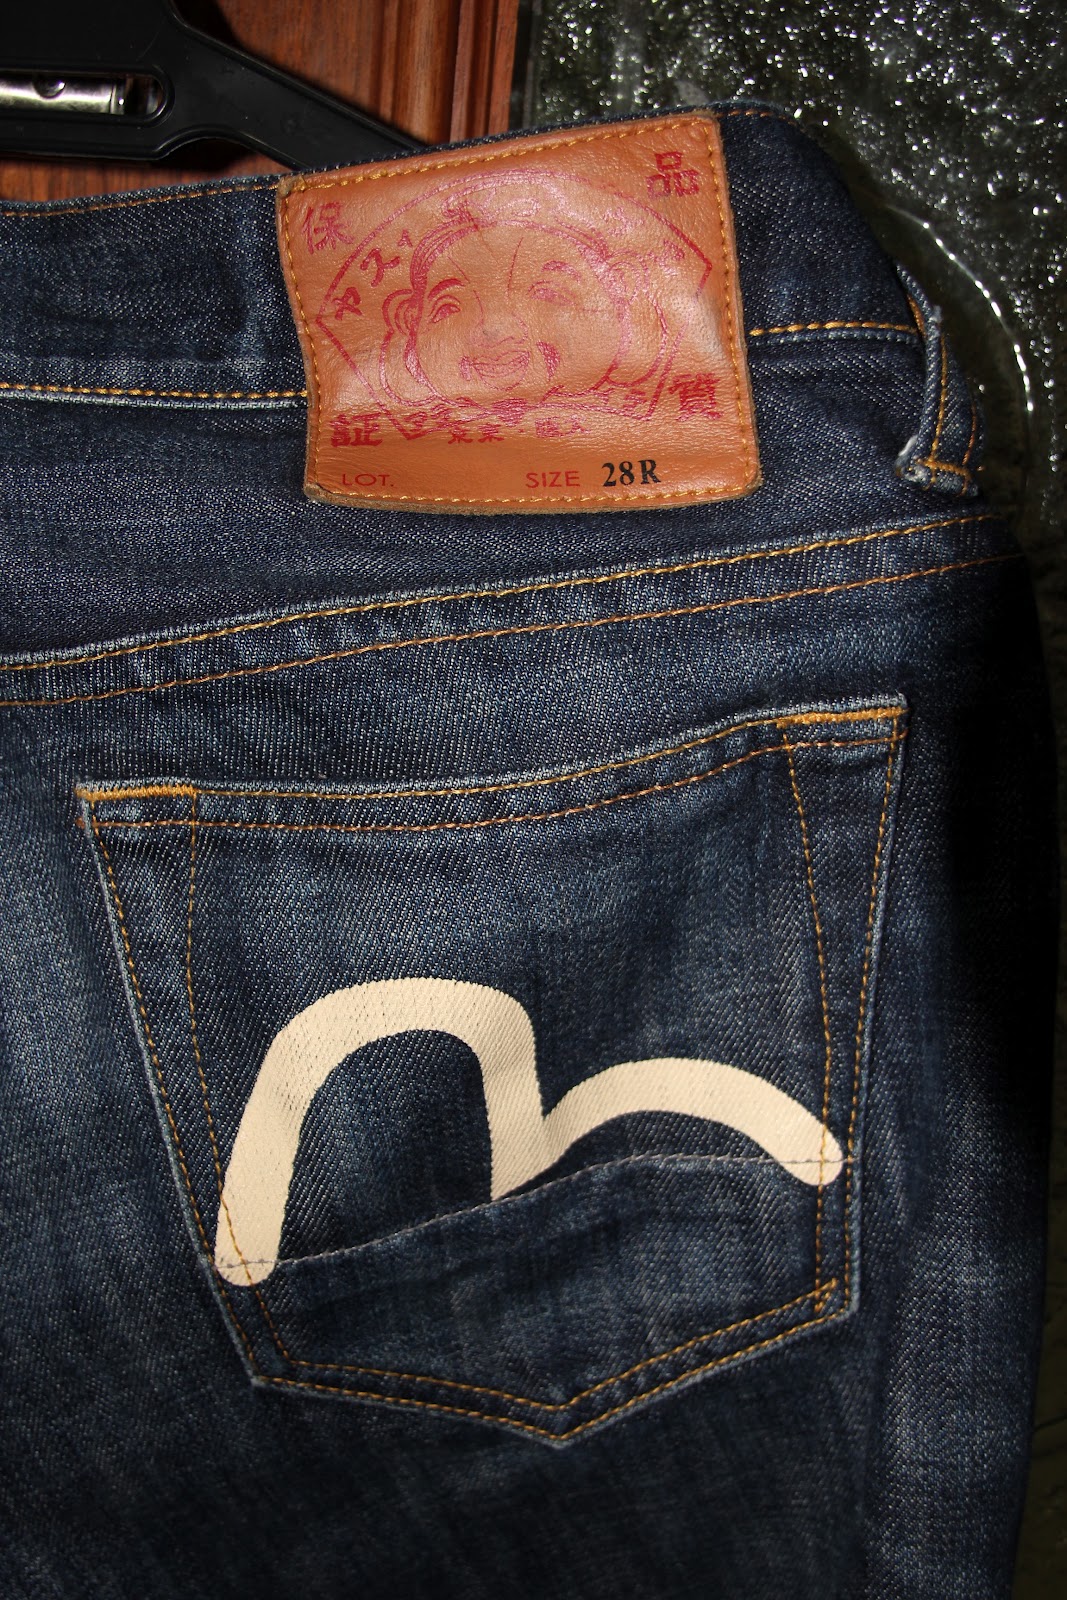 Hipster Closet: Evisu Genes Jeans - RM350